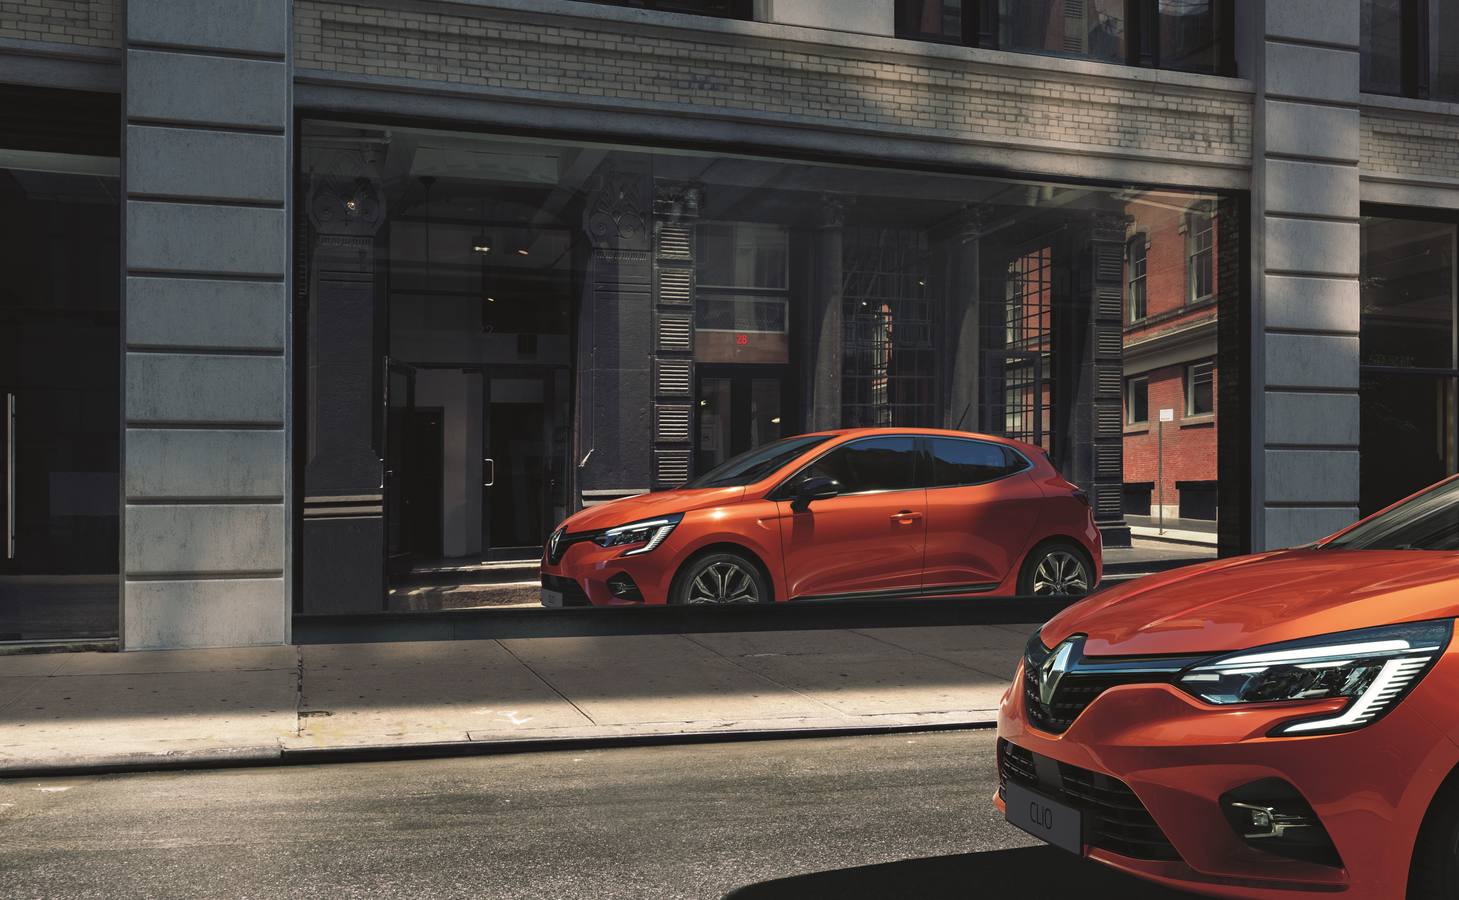 La quinta generación del Clio se acaba de dar a conocer. Una nueva versión con mayor calidad, más tecnología y adopta un diseño más moderno y dinámico.